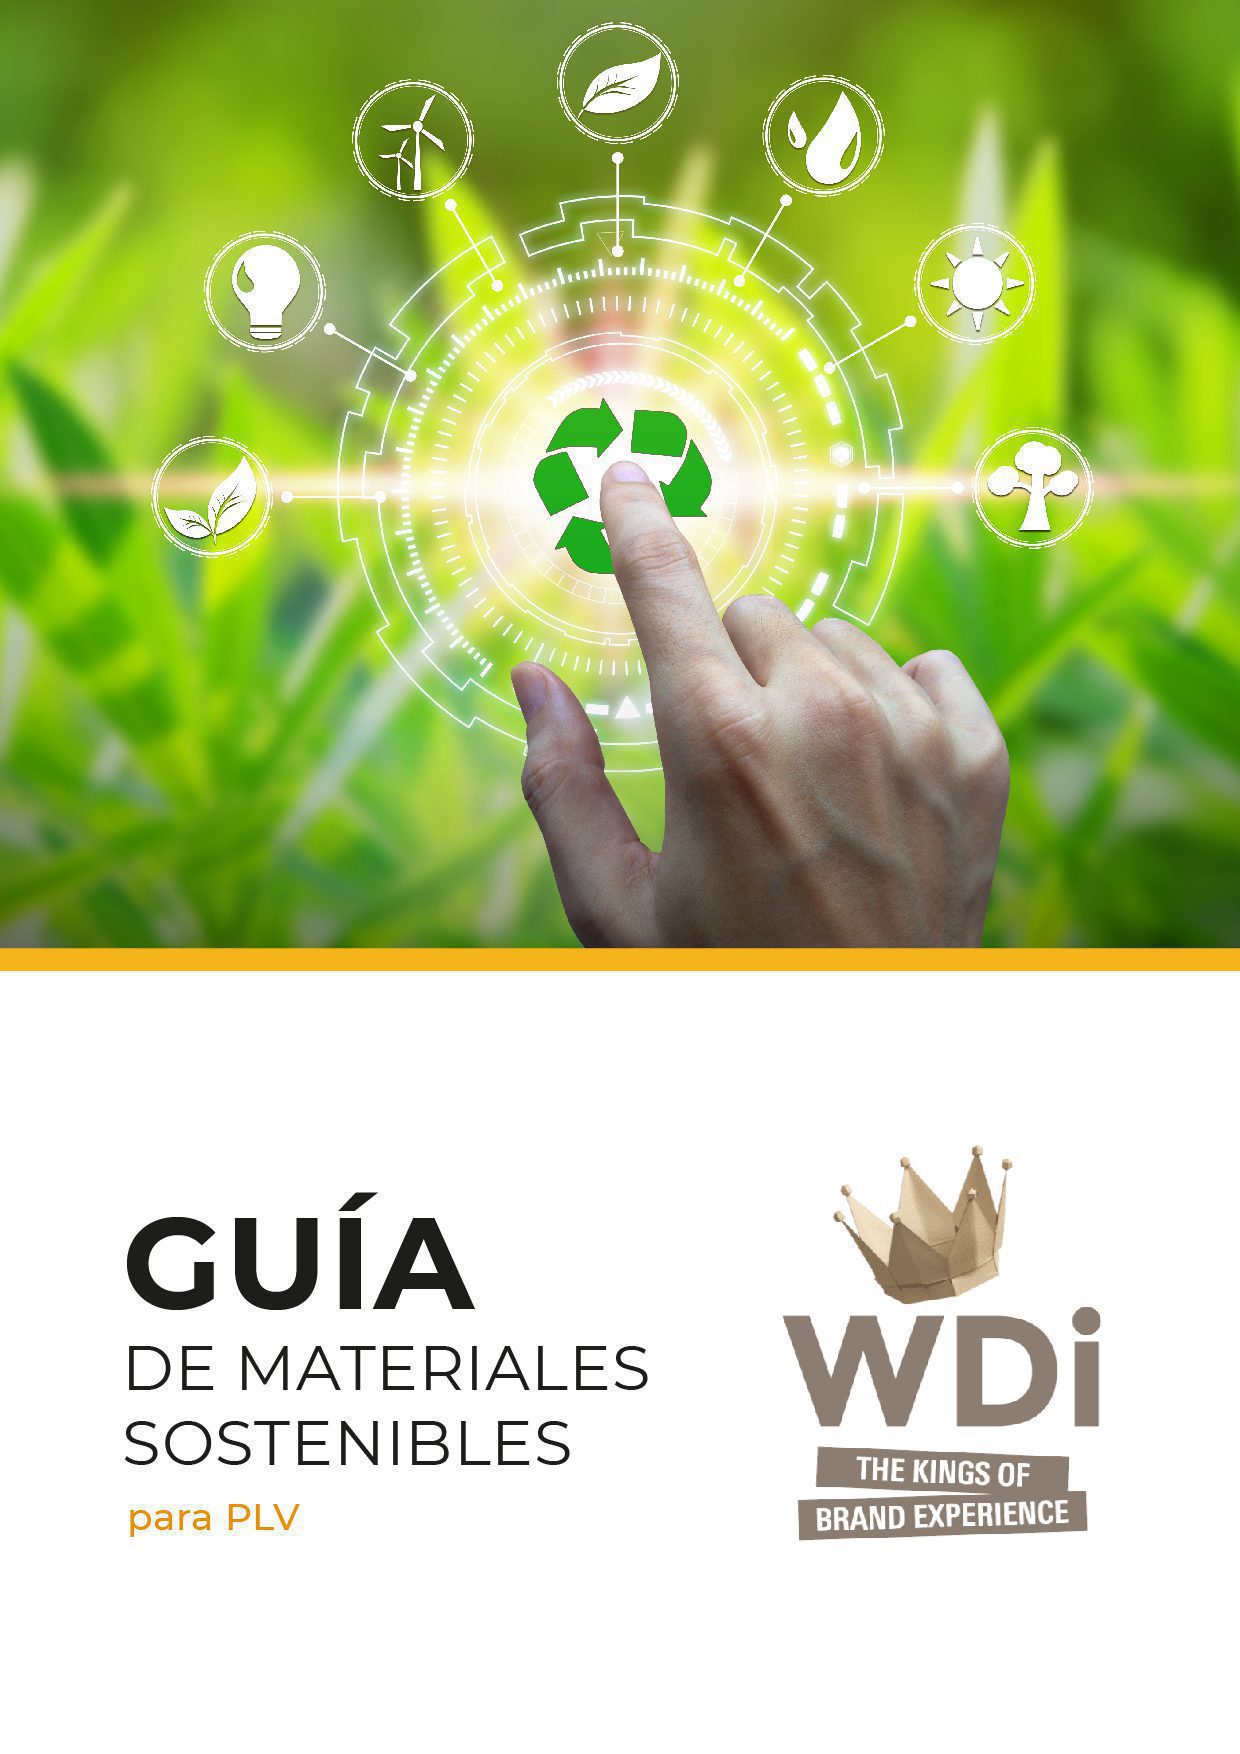 Guía de materiales PLV sostenibles - Grupo WDi